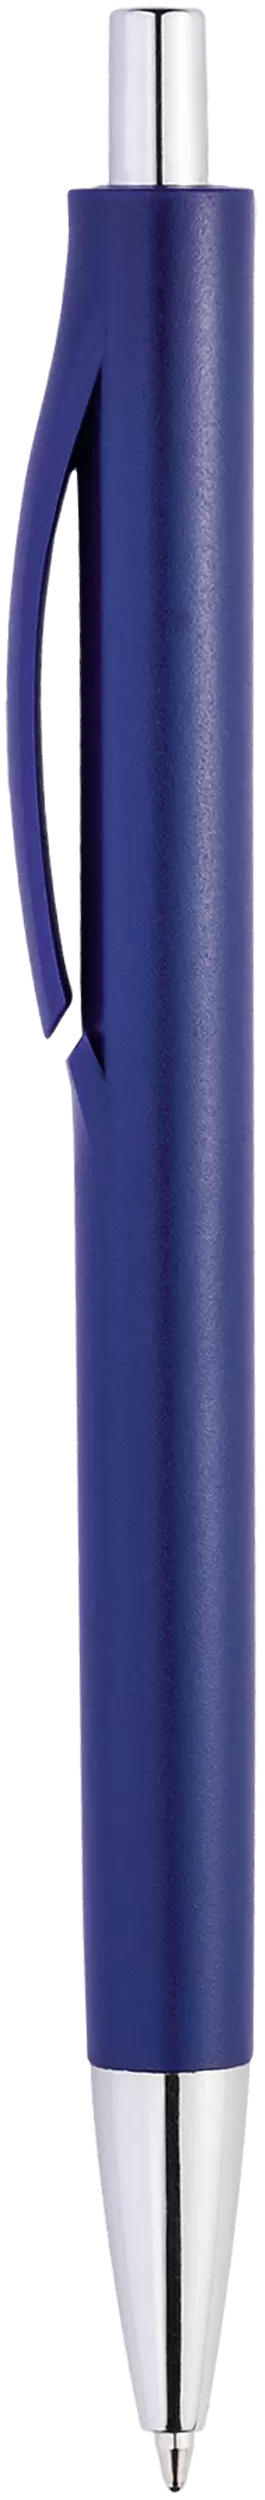 Ручка IGLA CHROME Темно-синяя 1032-14